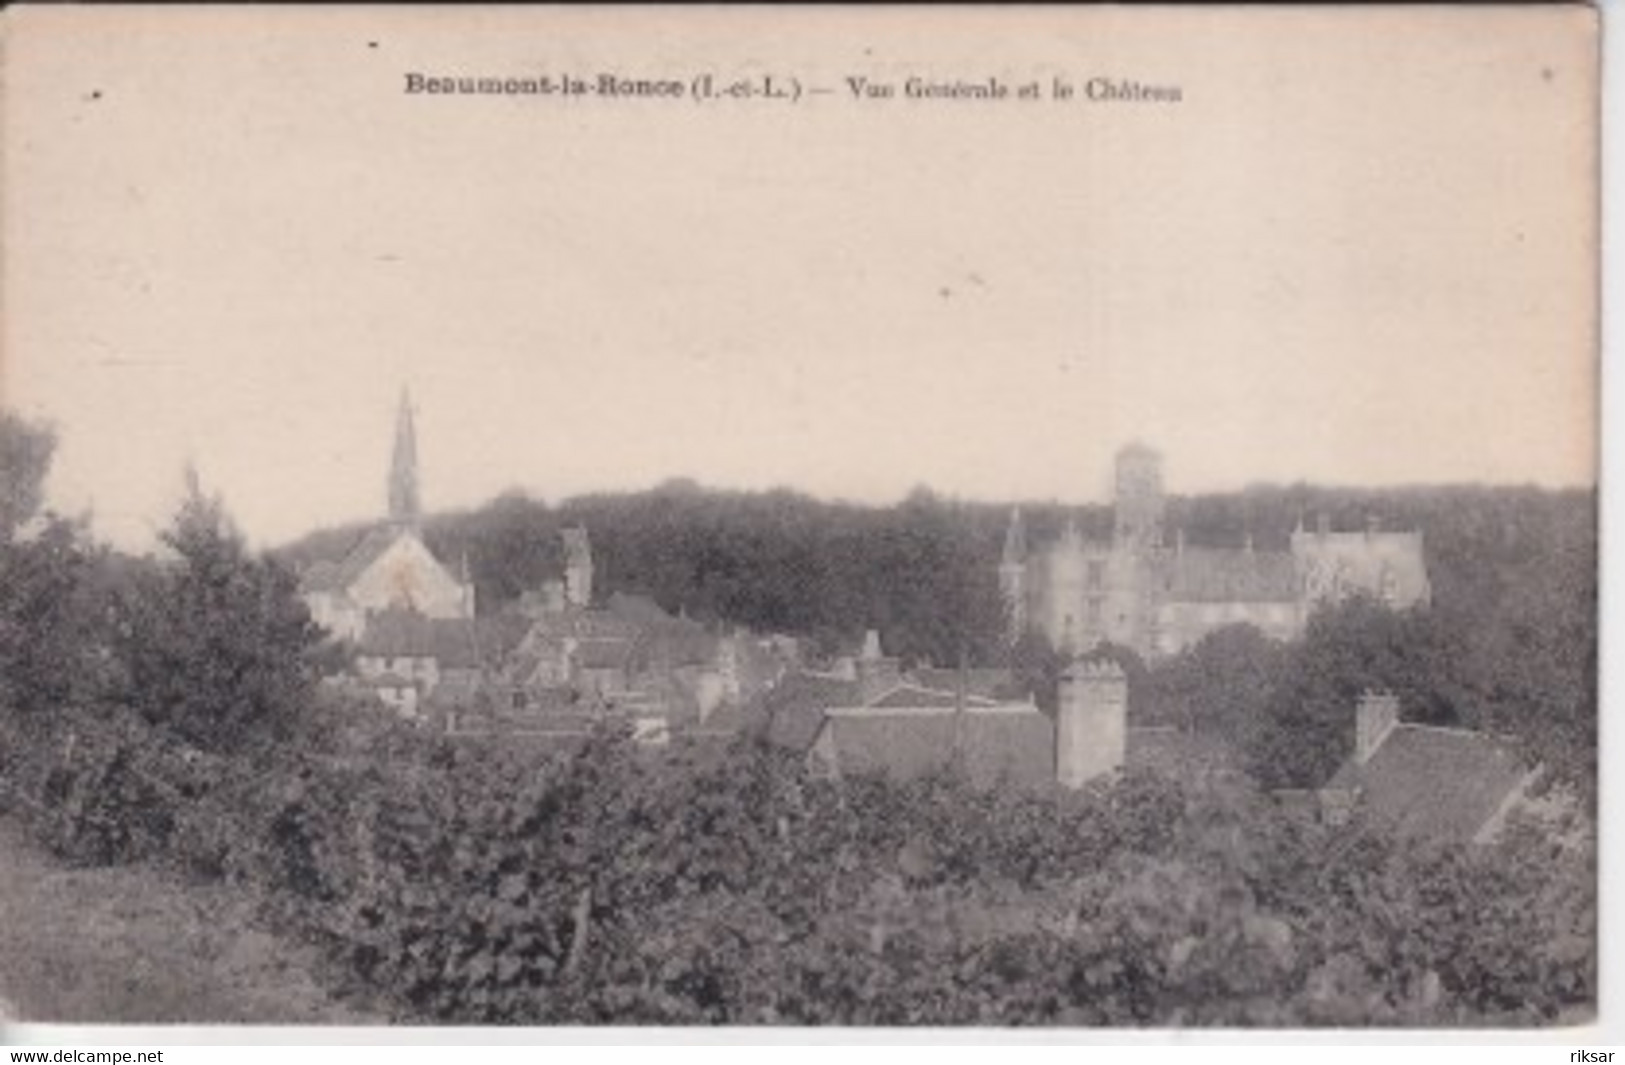 BEAUMONT LA RONCE - Beaumont-la-Ronce